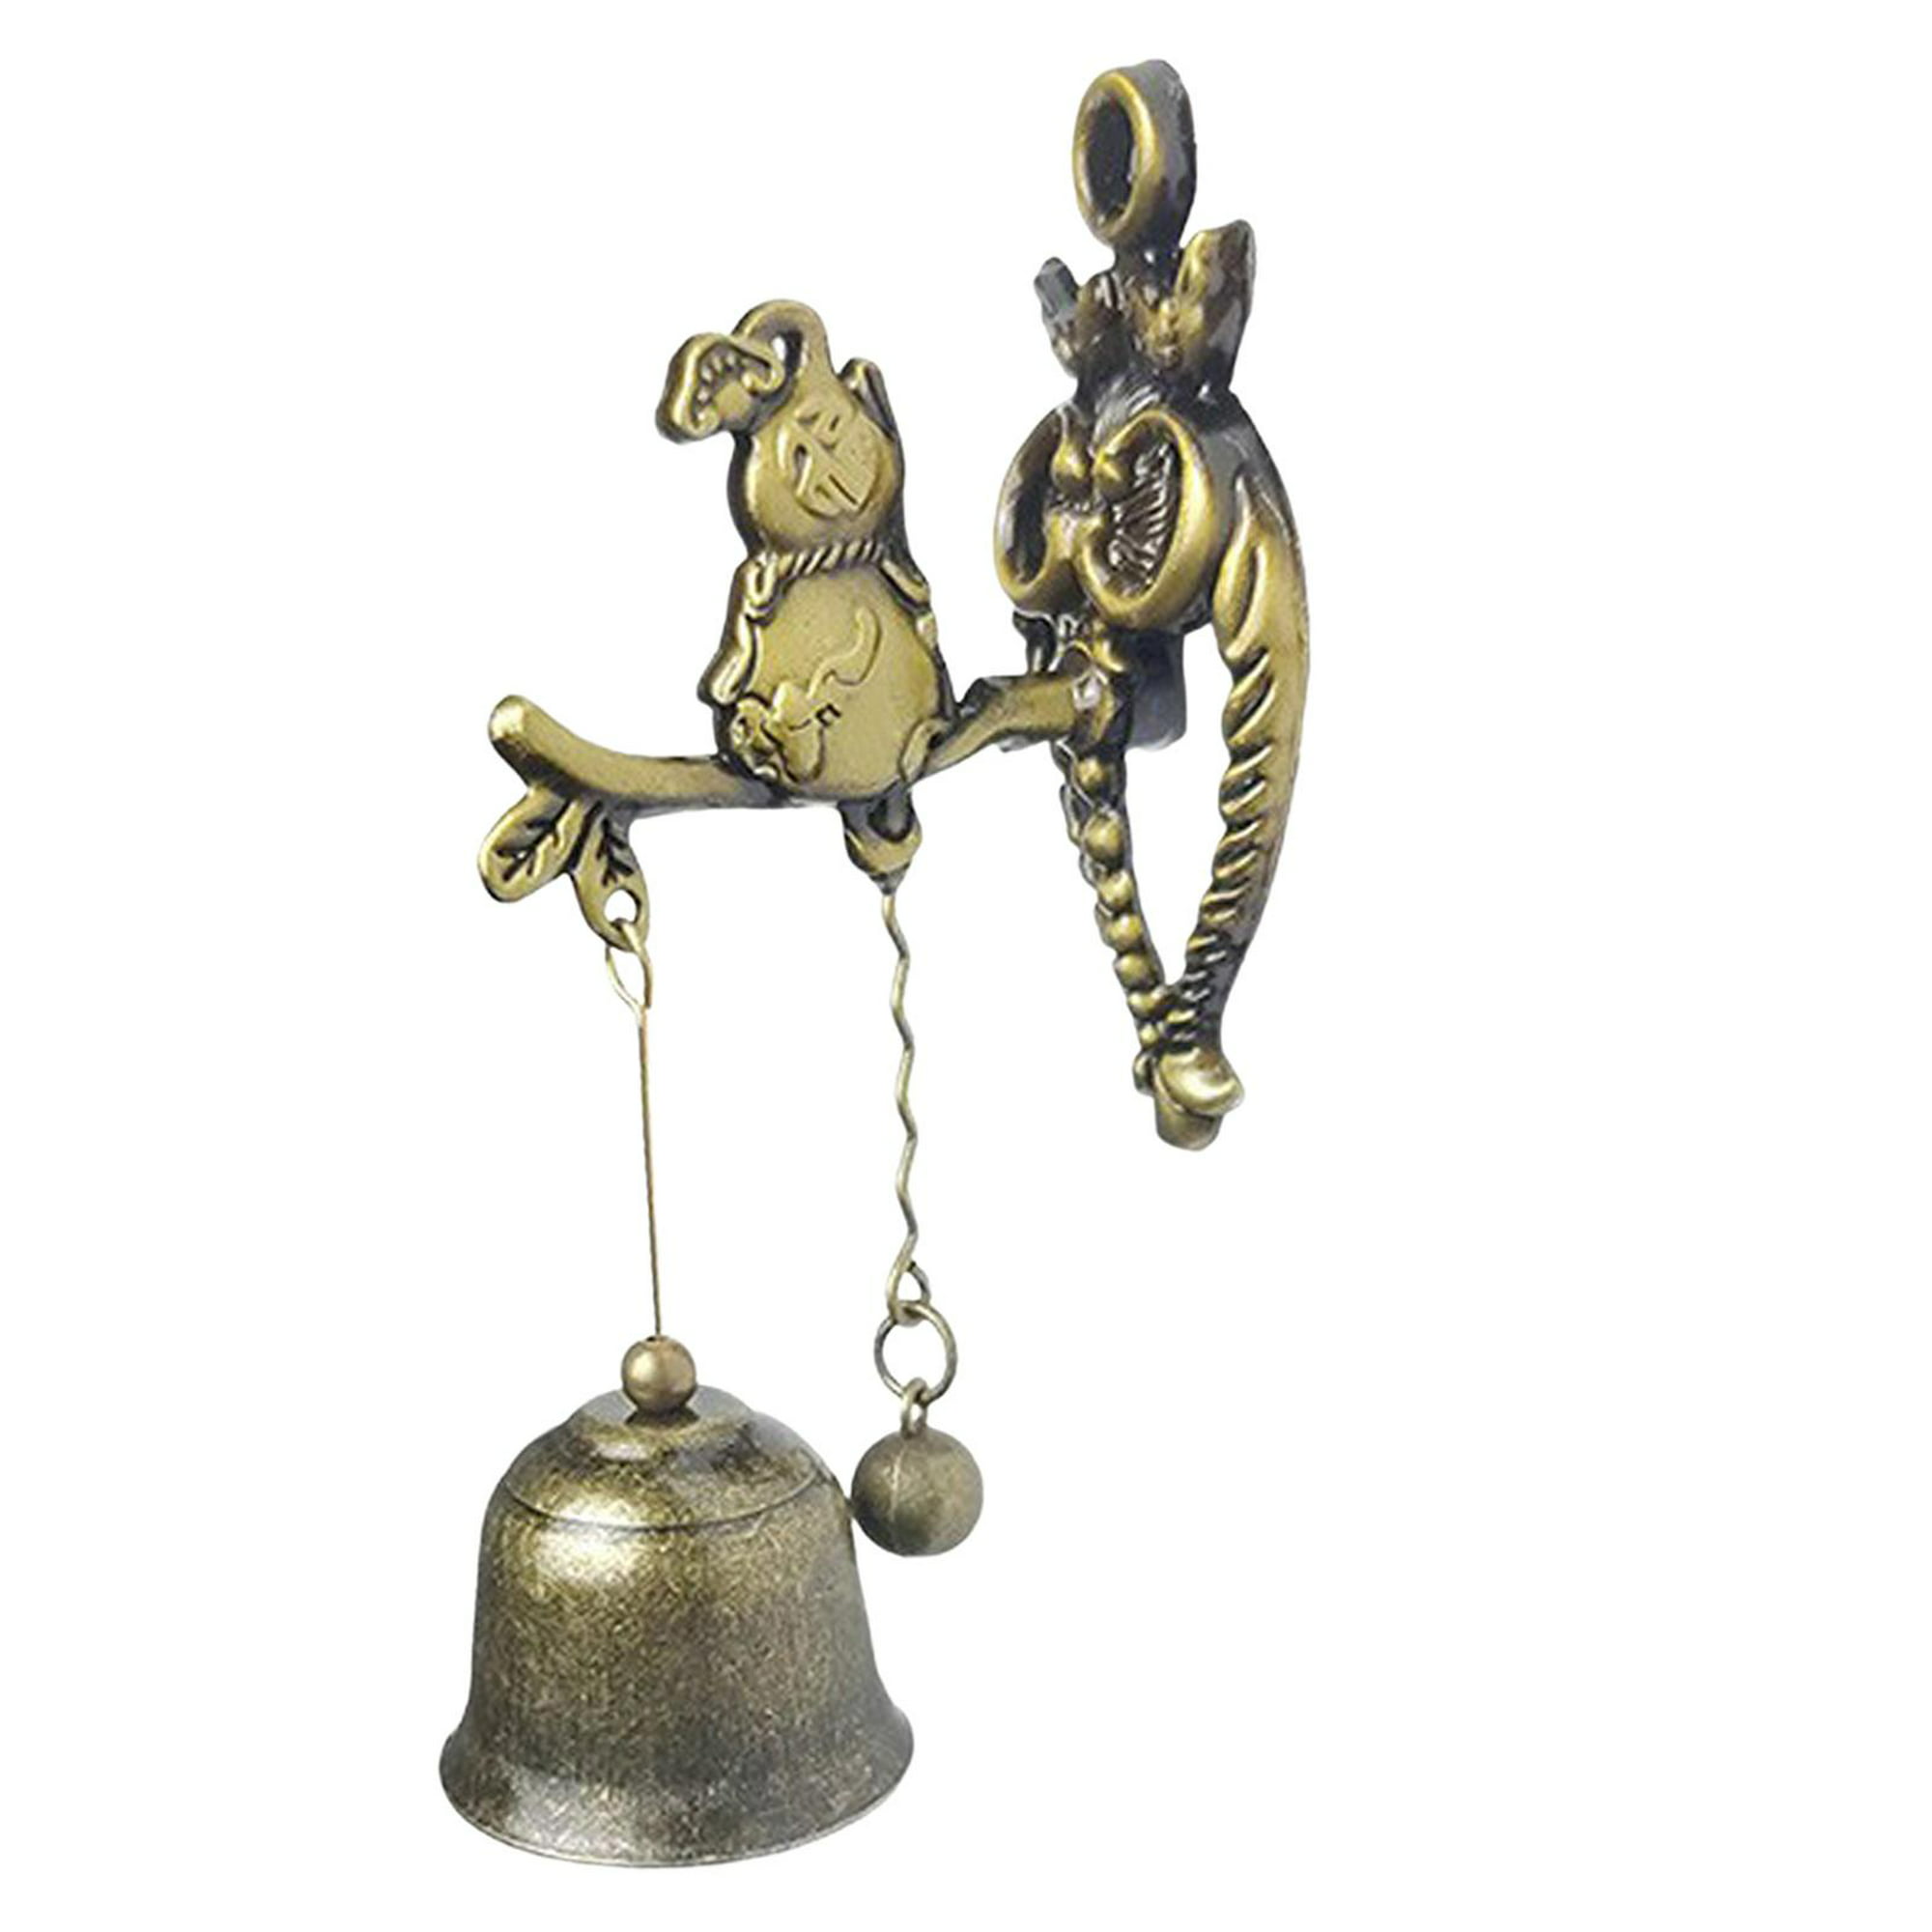 Campana colgante para de carillones de viento, campana puerta, , decoración del hogar Calabaza Zulema timbre de la puerta | Bodega en línea